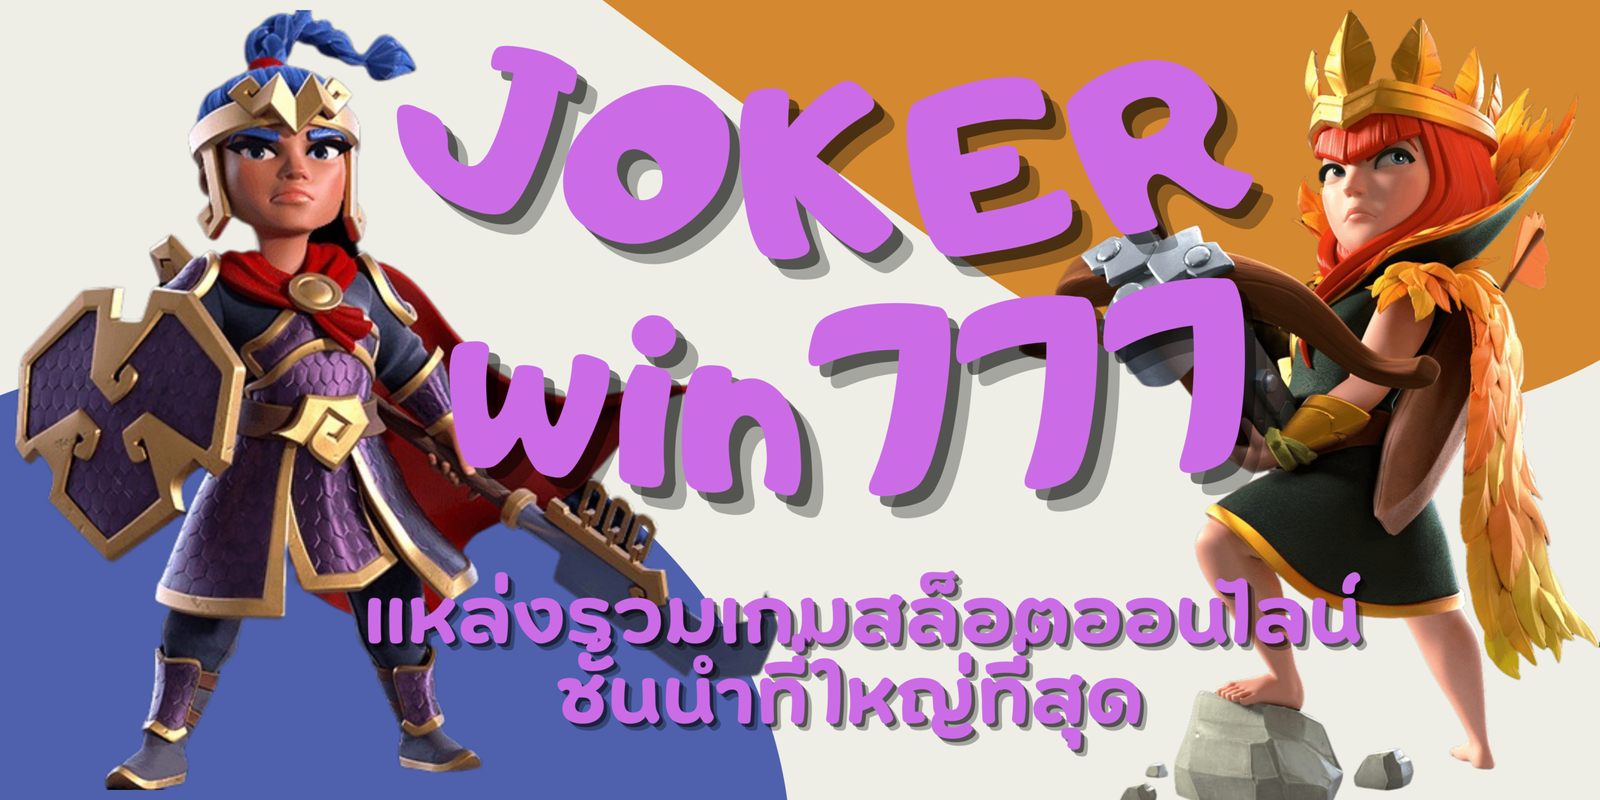 joker-win777-สมัครสมาชิก